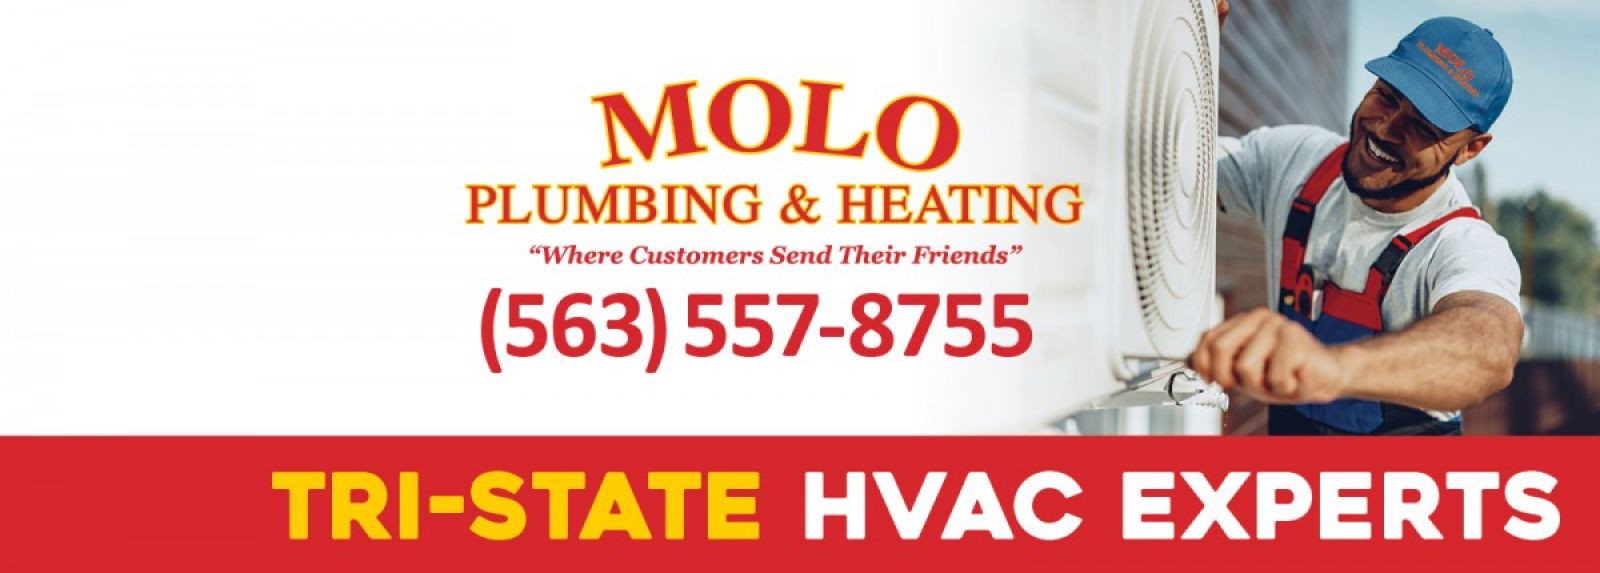 Molo Plumbing & Heating image